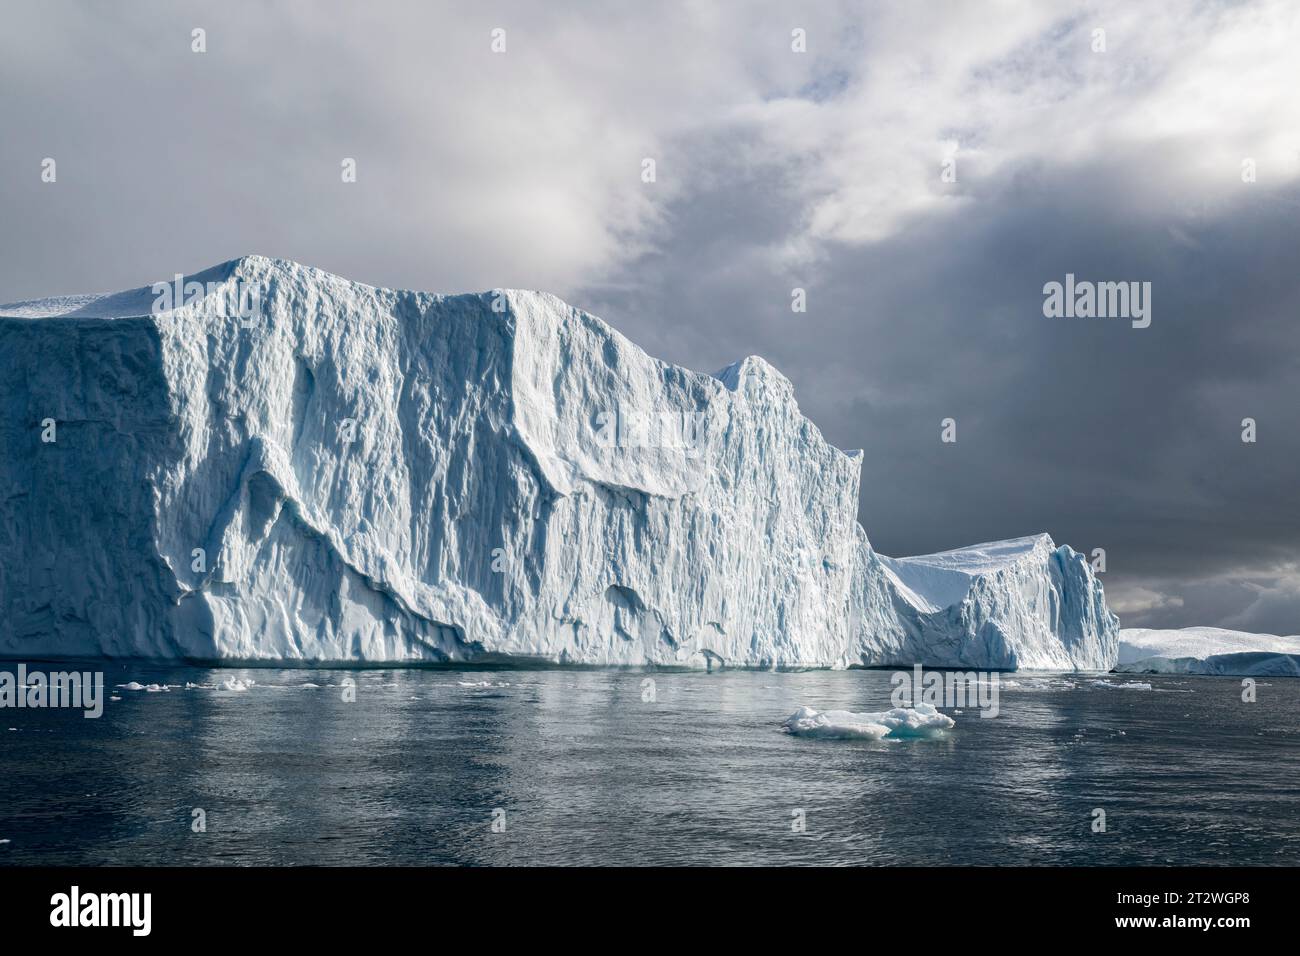 Groenland, Ilulissat. Disko Bay, célèbre pour ses grands icebergs. Banque D'Images